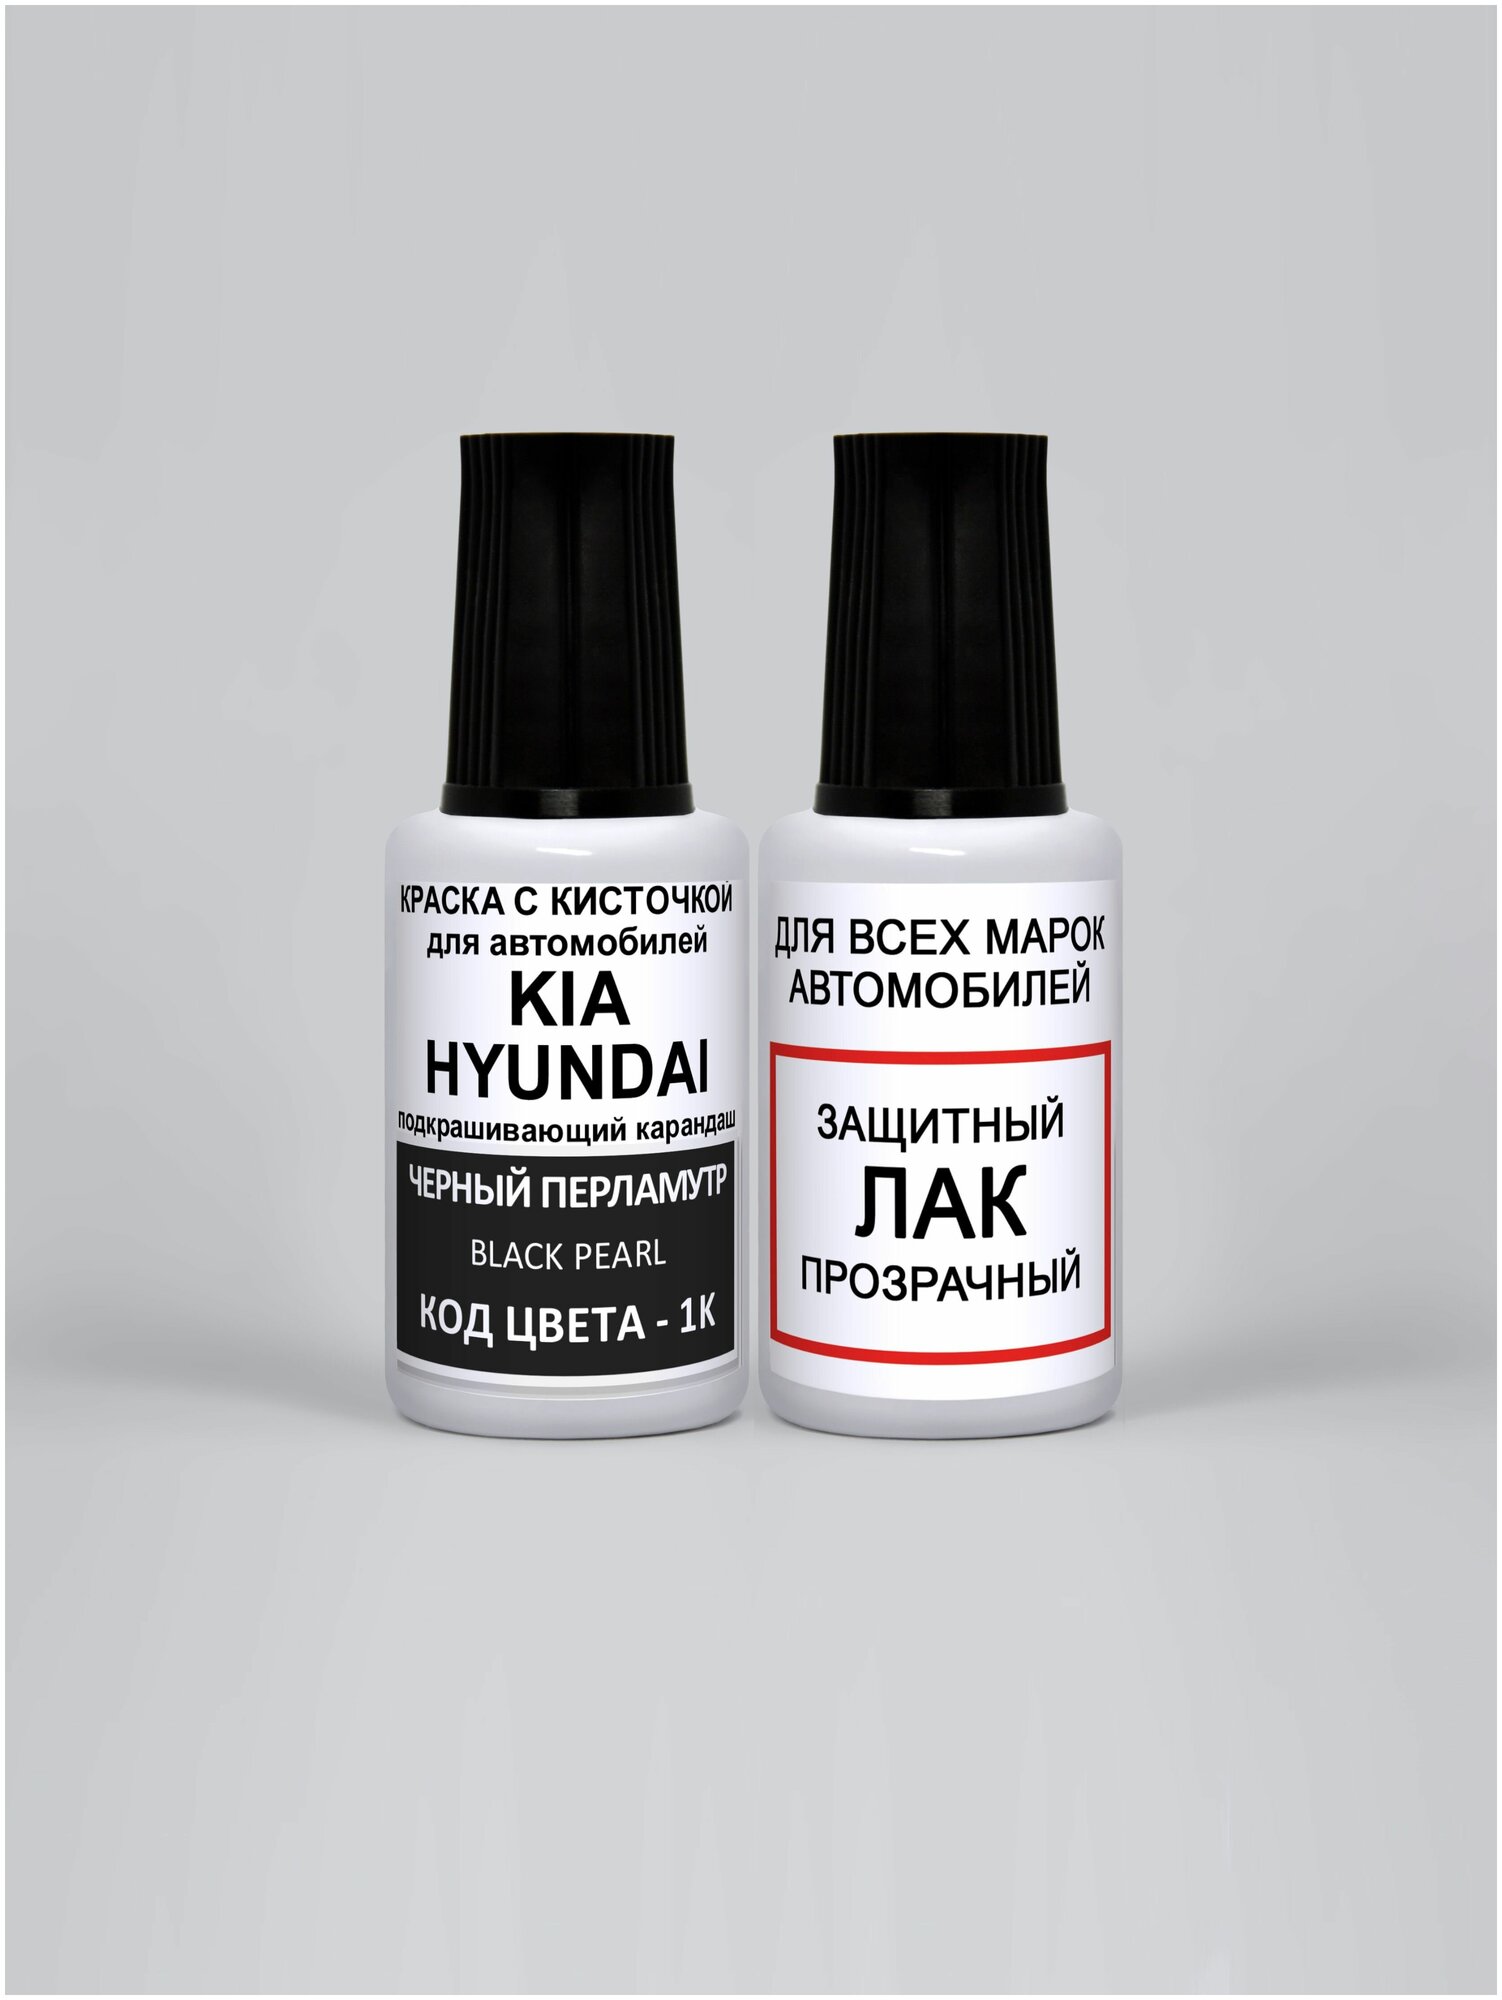 Краска автомобильная, штрих по коду- 1K для Kia Черный перламутр, Black Pearl, эмаль + лак, 2 предмета